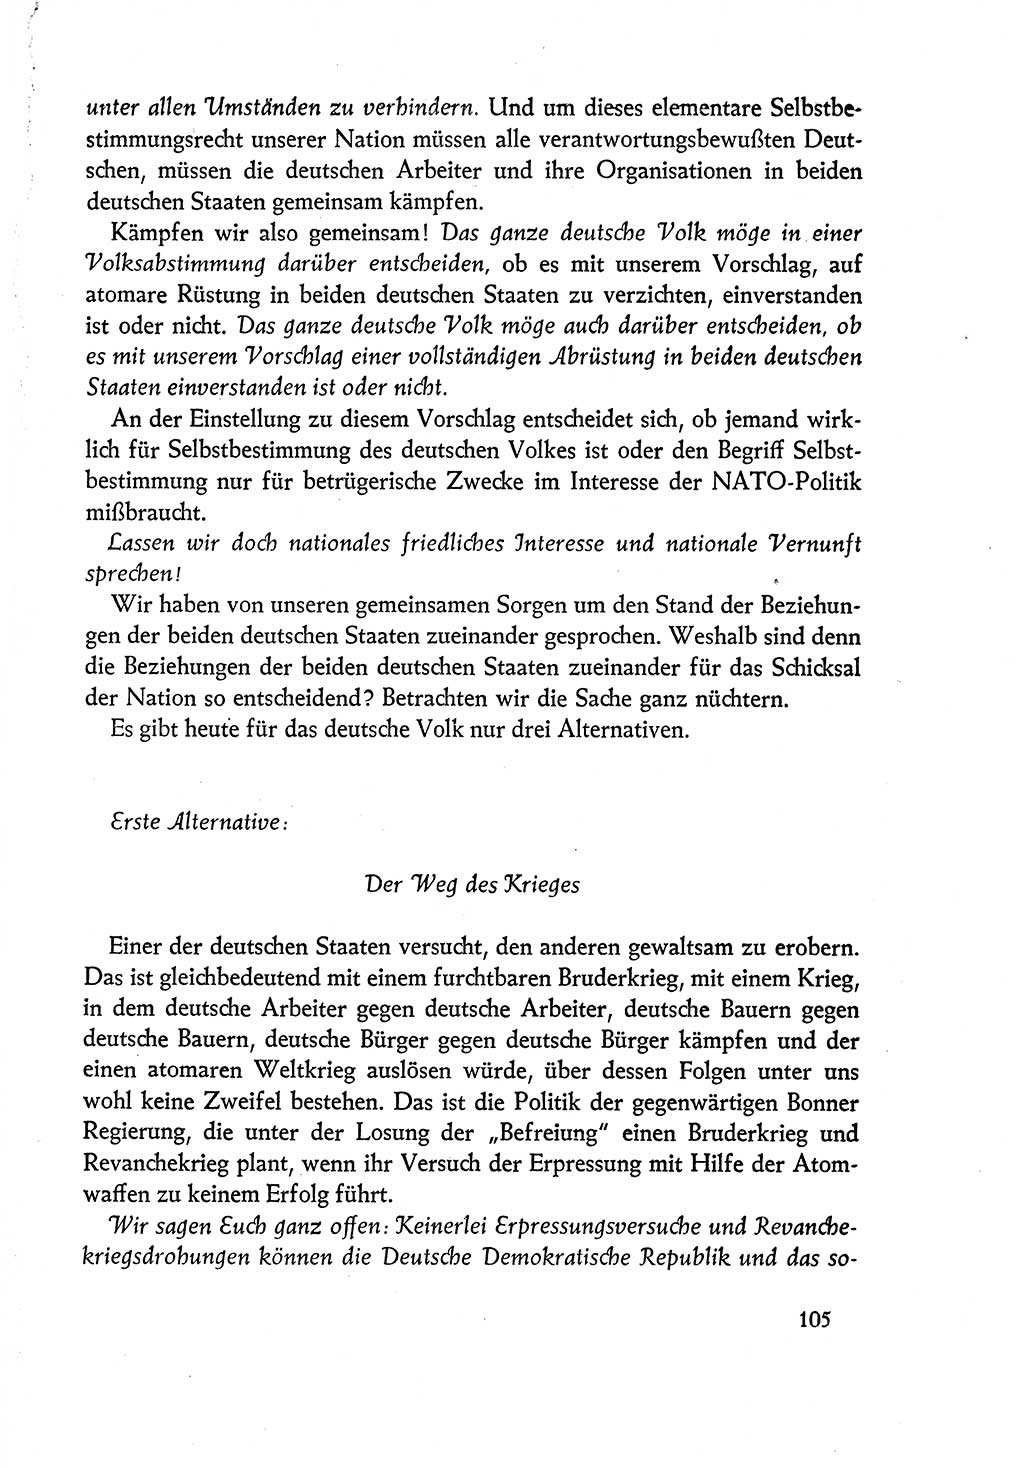 Dokumente der Sozialistischen Einheitspartei Deutschlands (SED) [Deutsche Demokratische Republik (DDR)] 1960-1961, Seite 105 (Dok. SED DDR 1960-1961, S. 105)